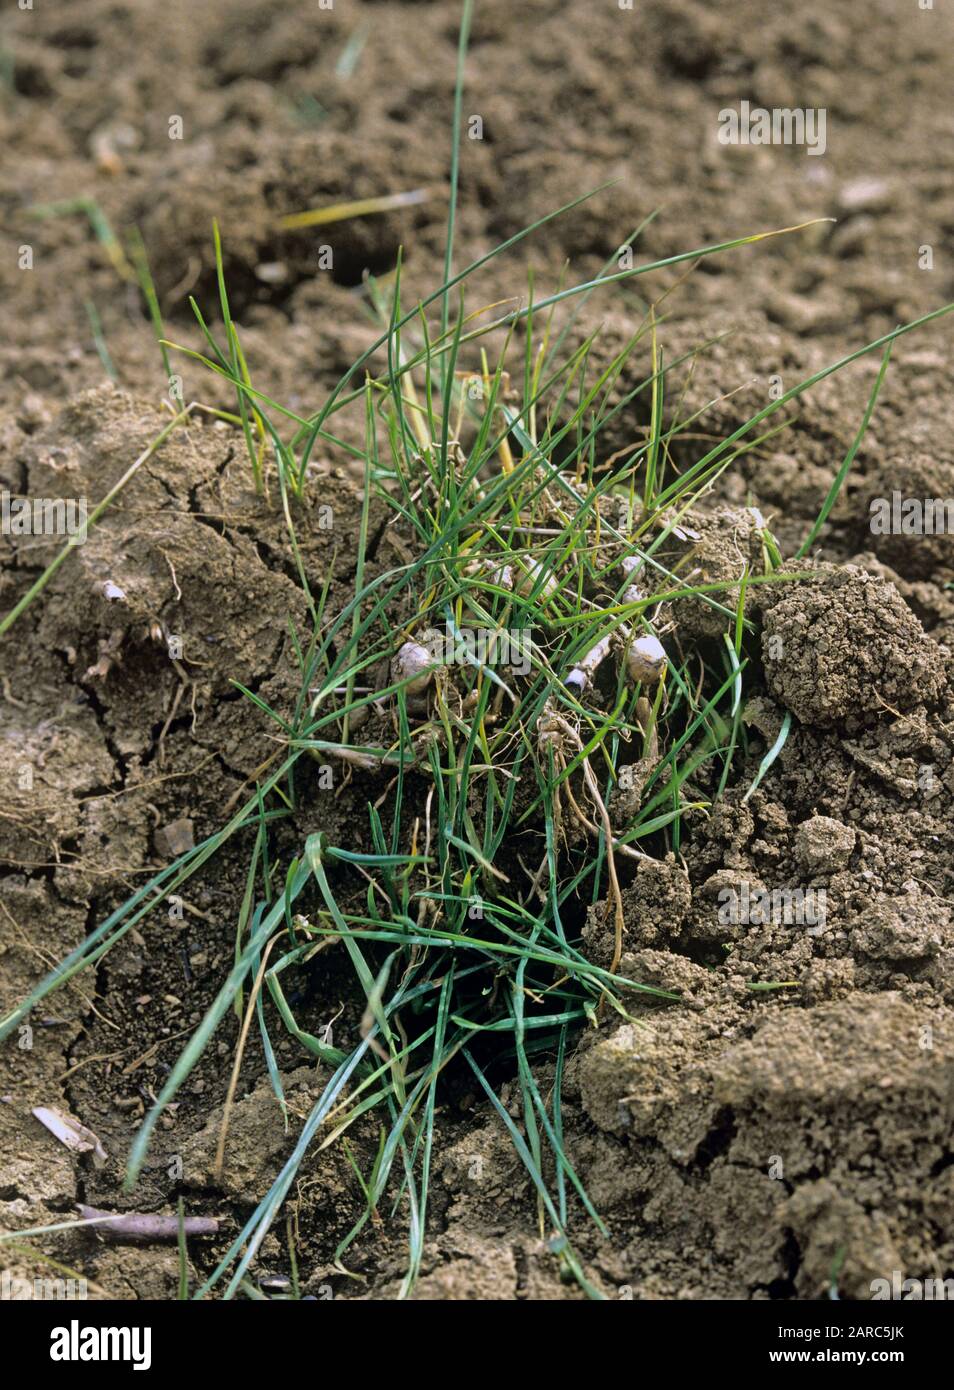 Zwiebelkost oder falsches Hafergras (Arrhenatherum elatius) Gras-Unkraut-Kulme,  die nach der Rotovation auf dem Boden verstreut sind Stockfotografie - Alamy